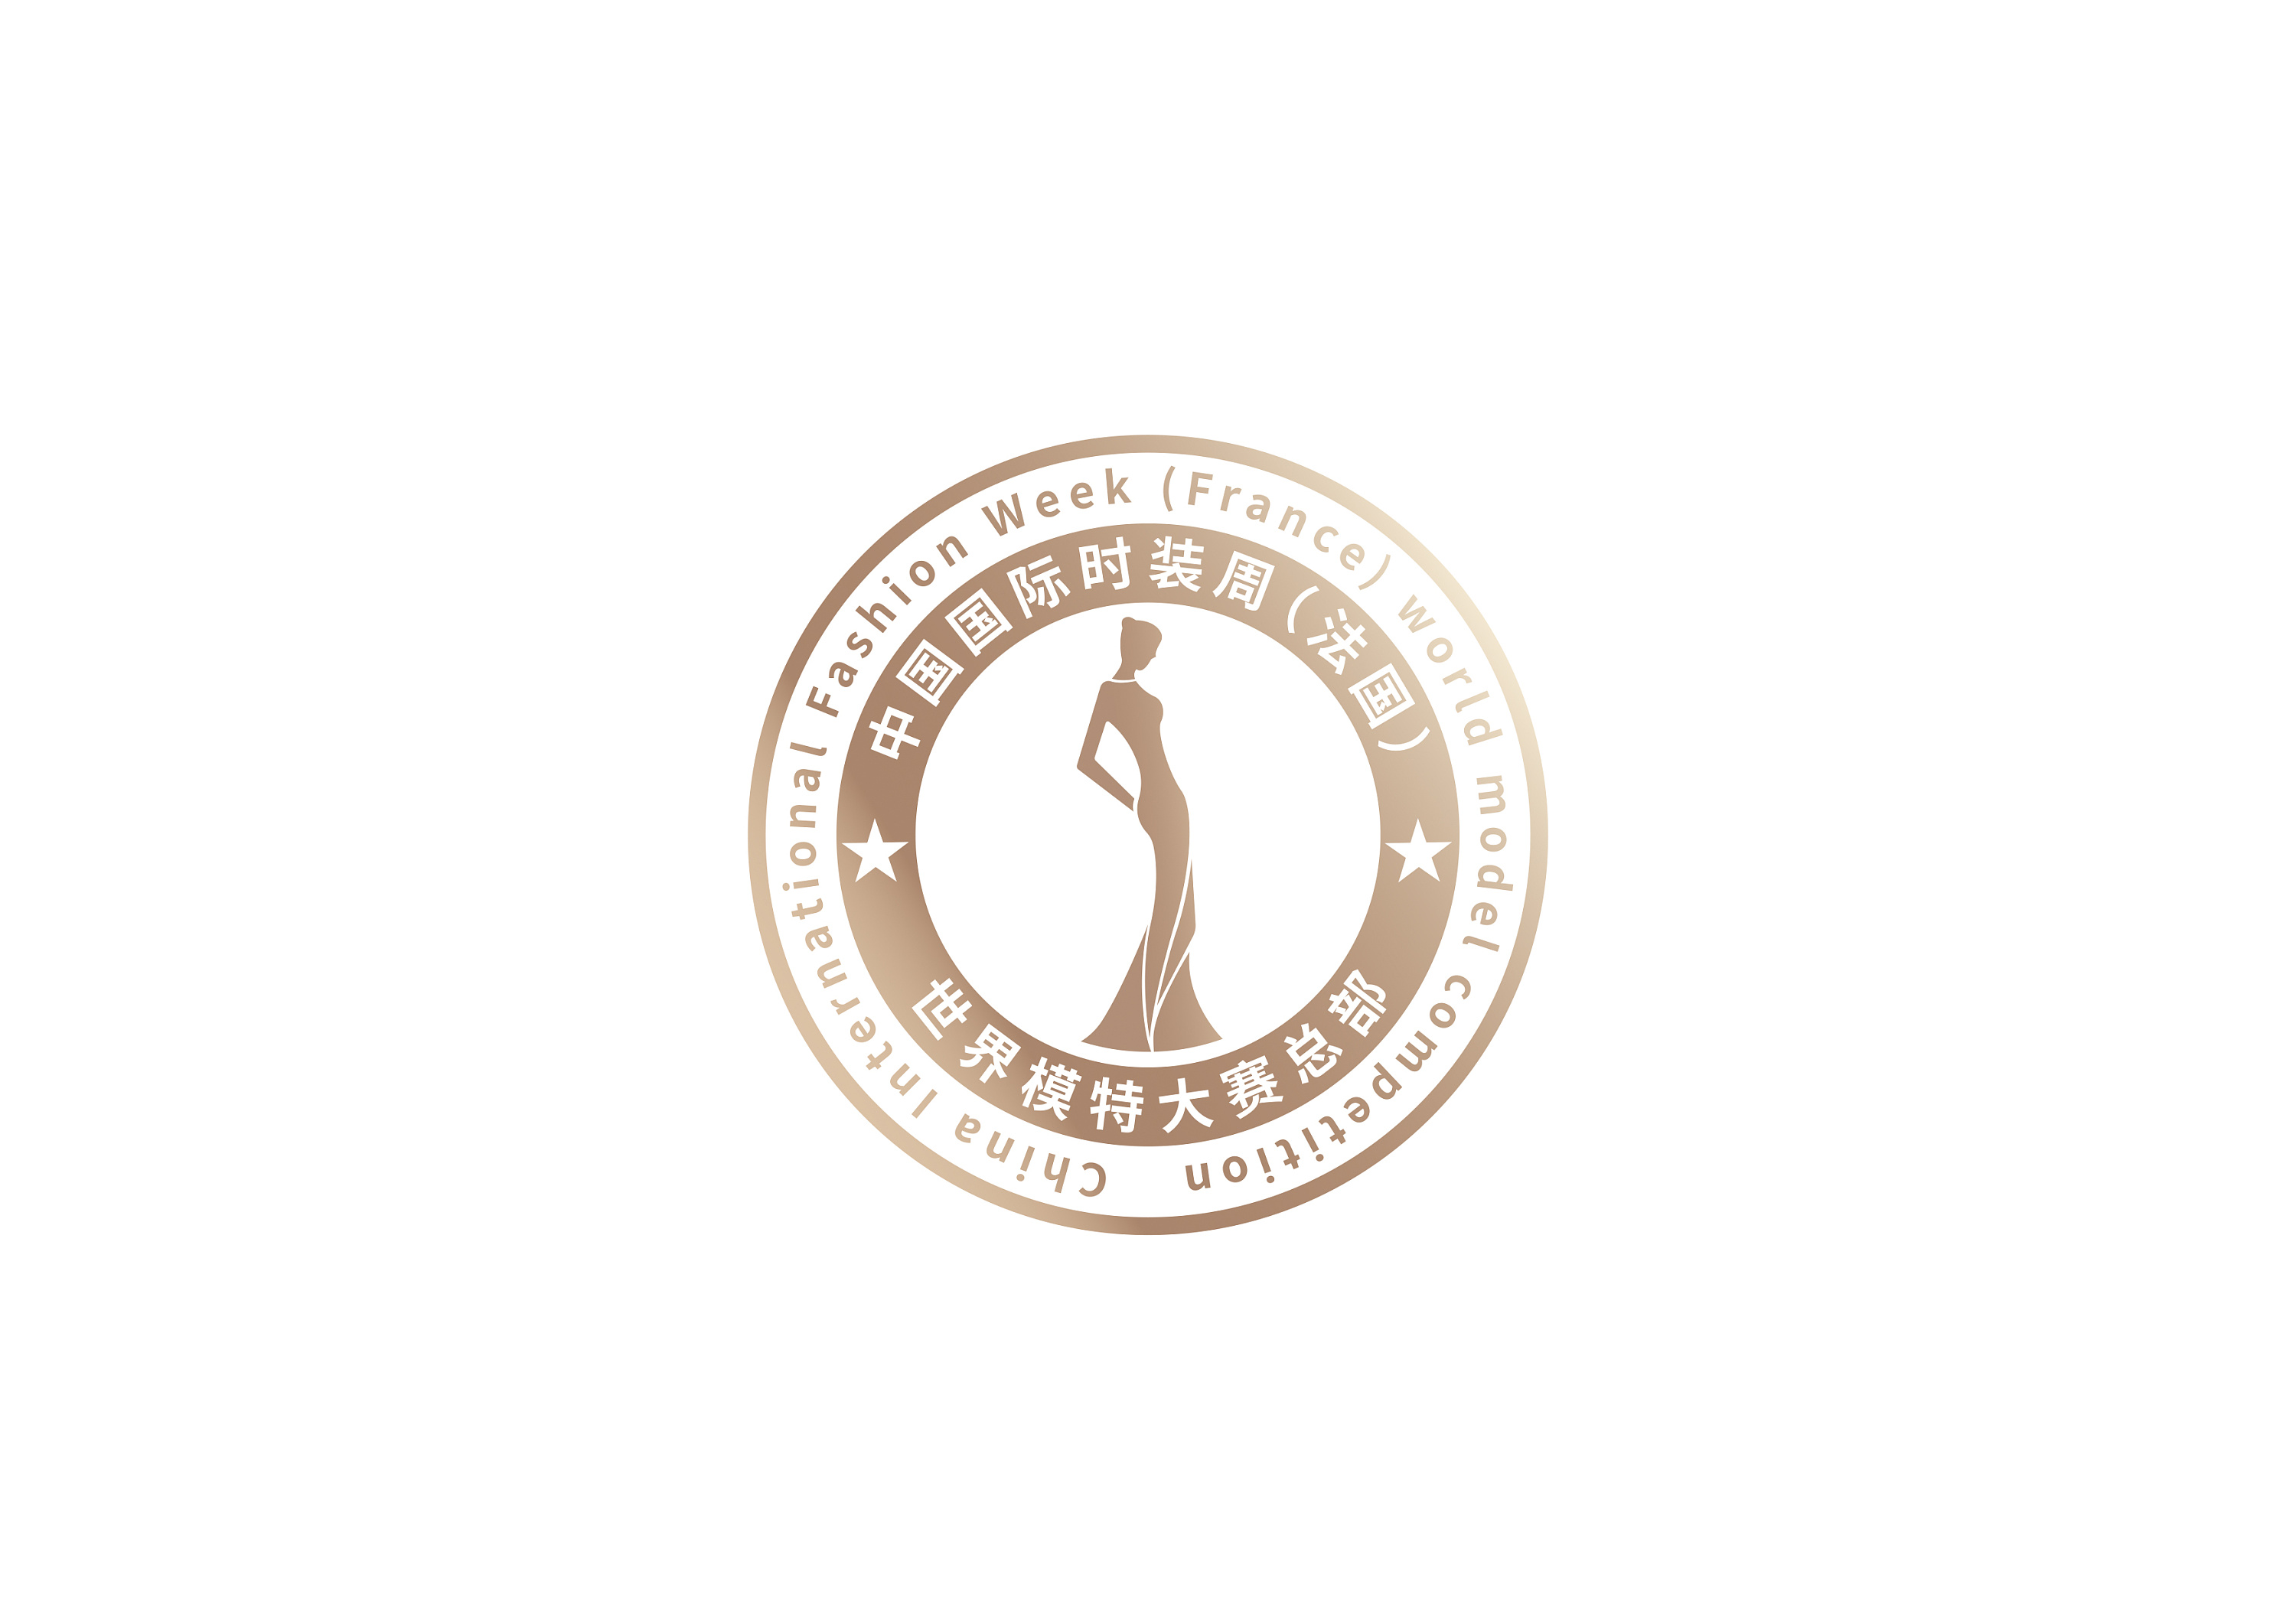 原创时装周logo设计,中国国际时装周(法国)